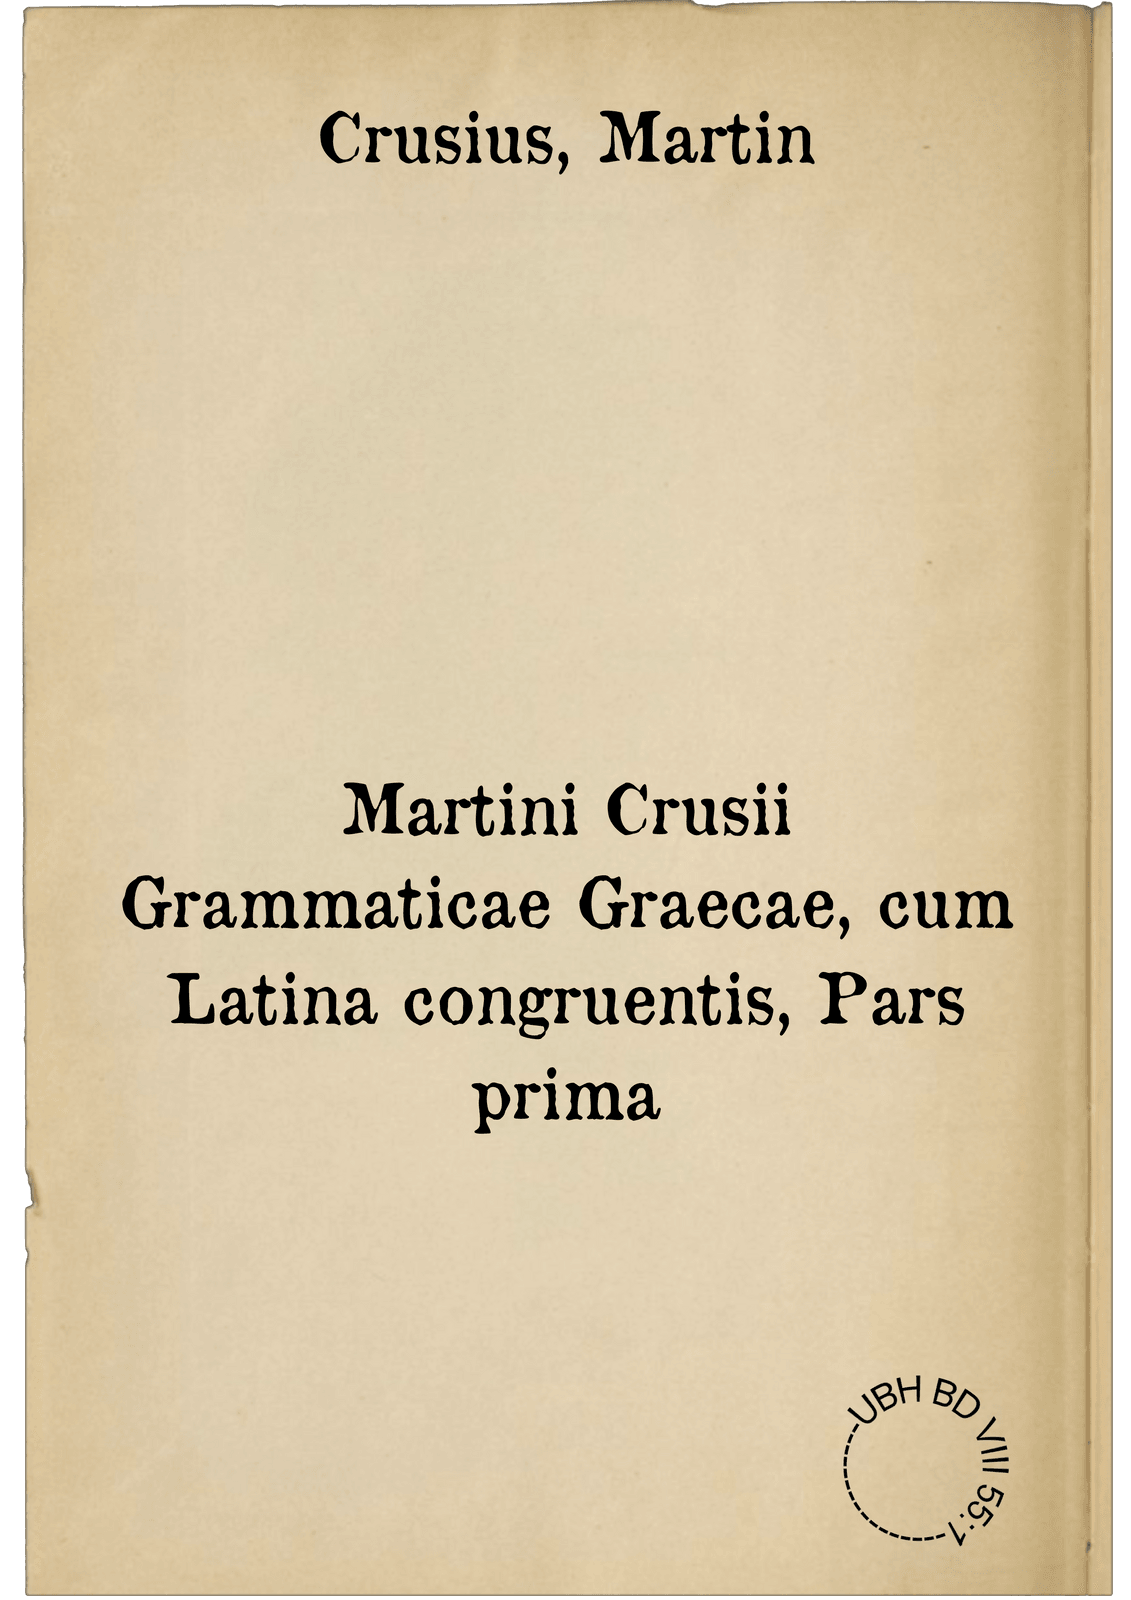 Martini Crusii Grammaticae Graecae, cum Latina congruentis, Pars prima